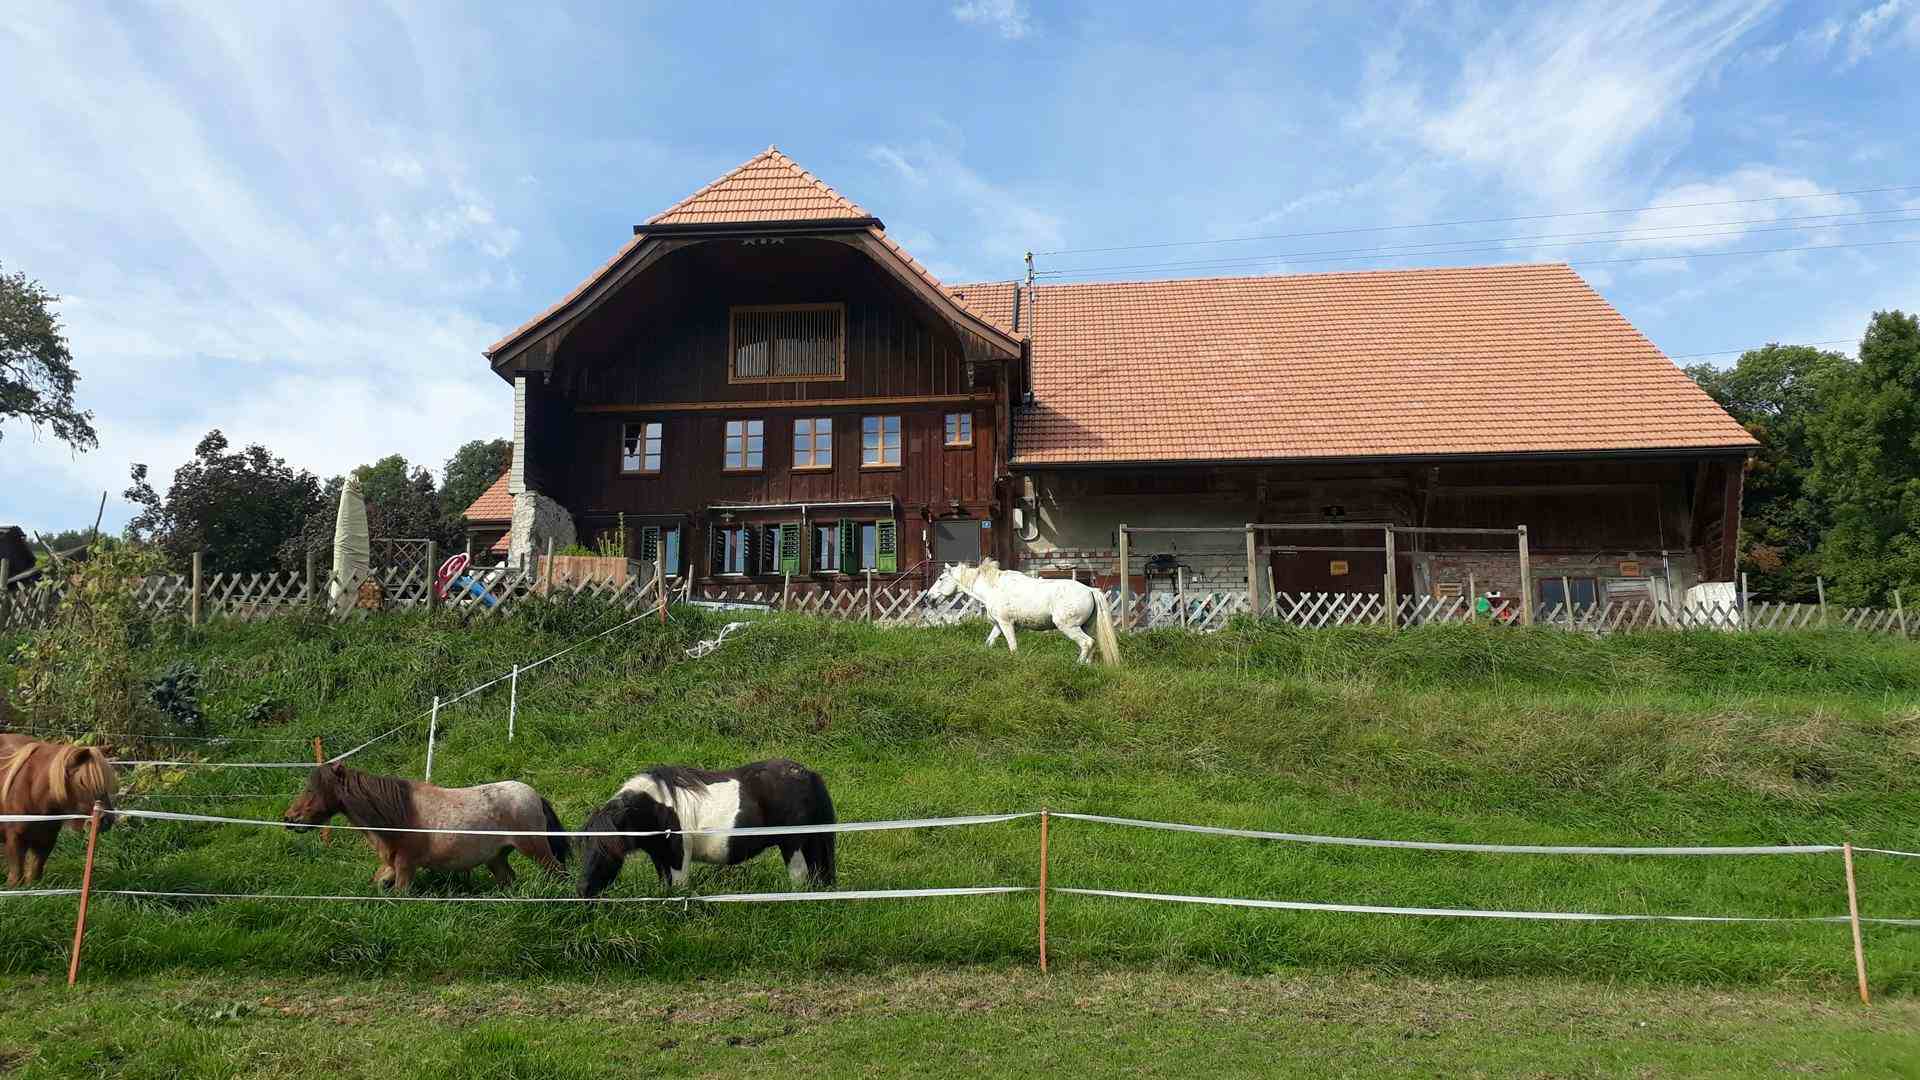 Aussichtshof, producer in Gossau canton of Zurich in Switzerland